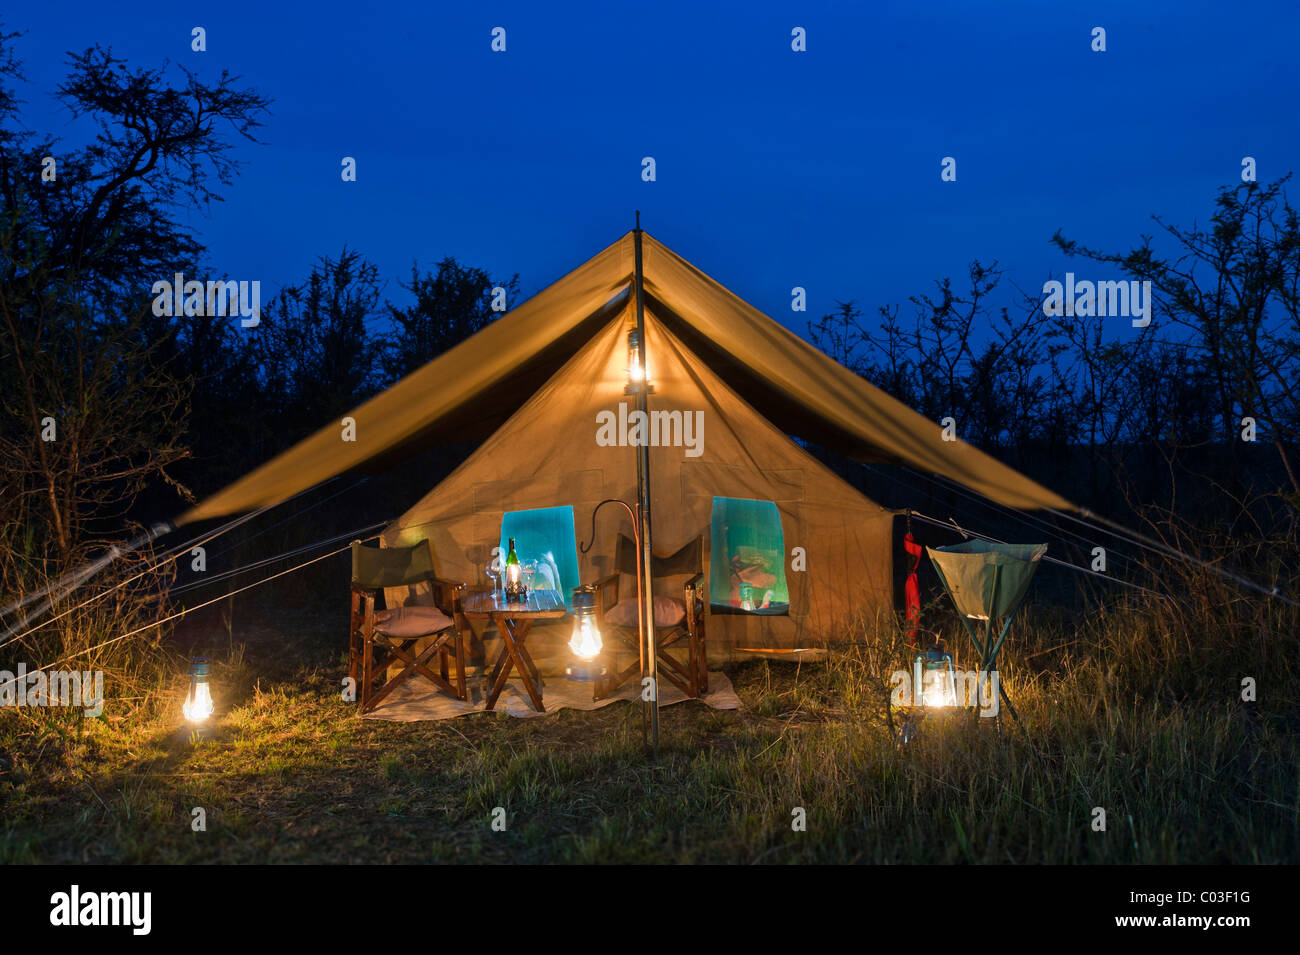 Camp de luxe élégant, vivant sous la tente, tente au crépuscule avec éclairage, Serengeti, Tanzania, Africa Banque D'Images